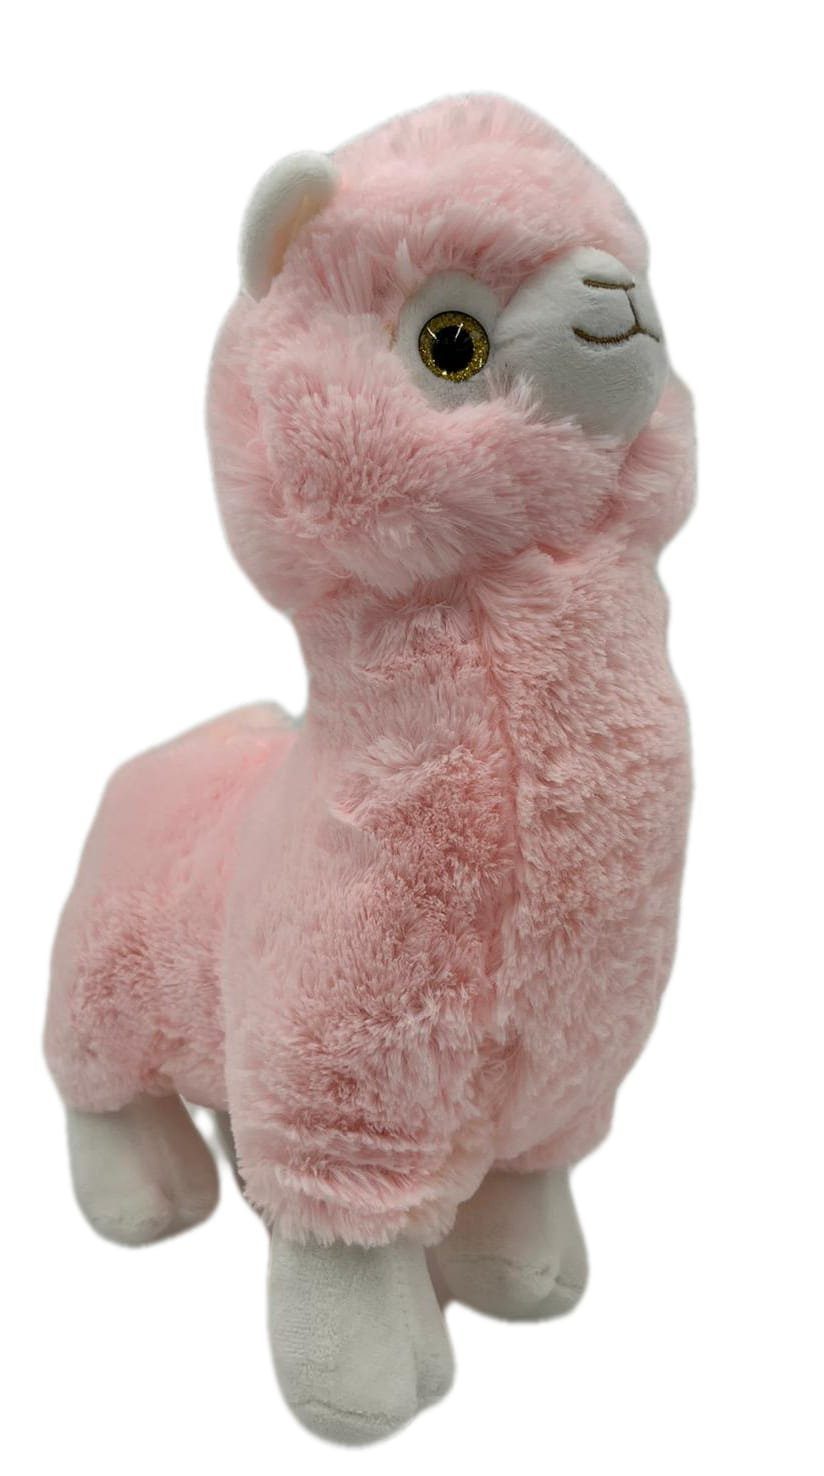 soma Kuscheltier Alpaka XXL 35cm groß Pink Rosa Pastell, Super weicher  Plüsch Stofftier Kuscheltier für Kinder zum spielen